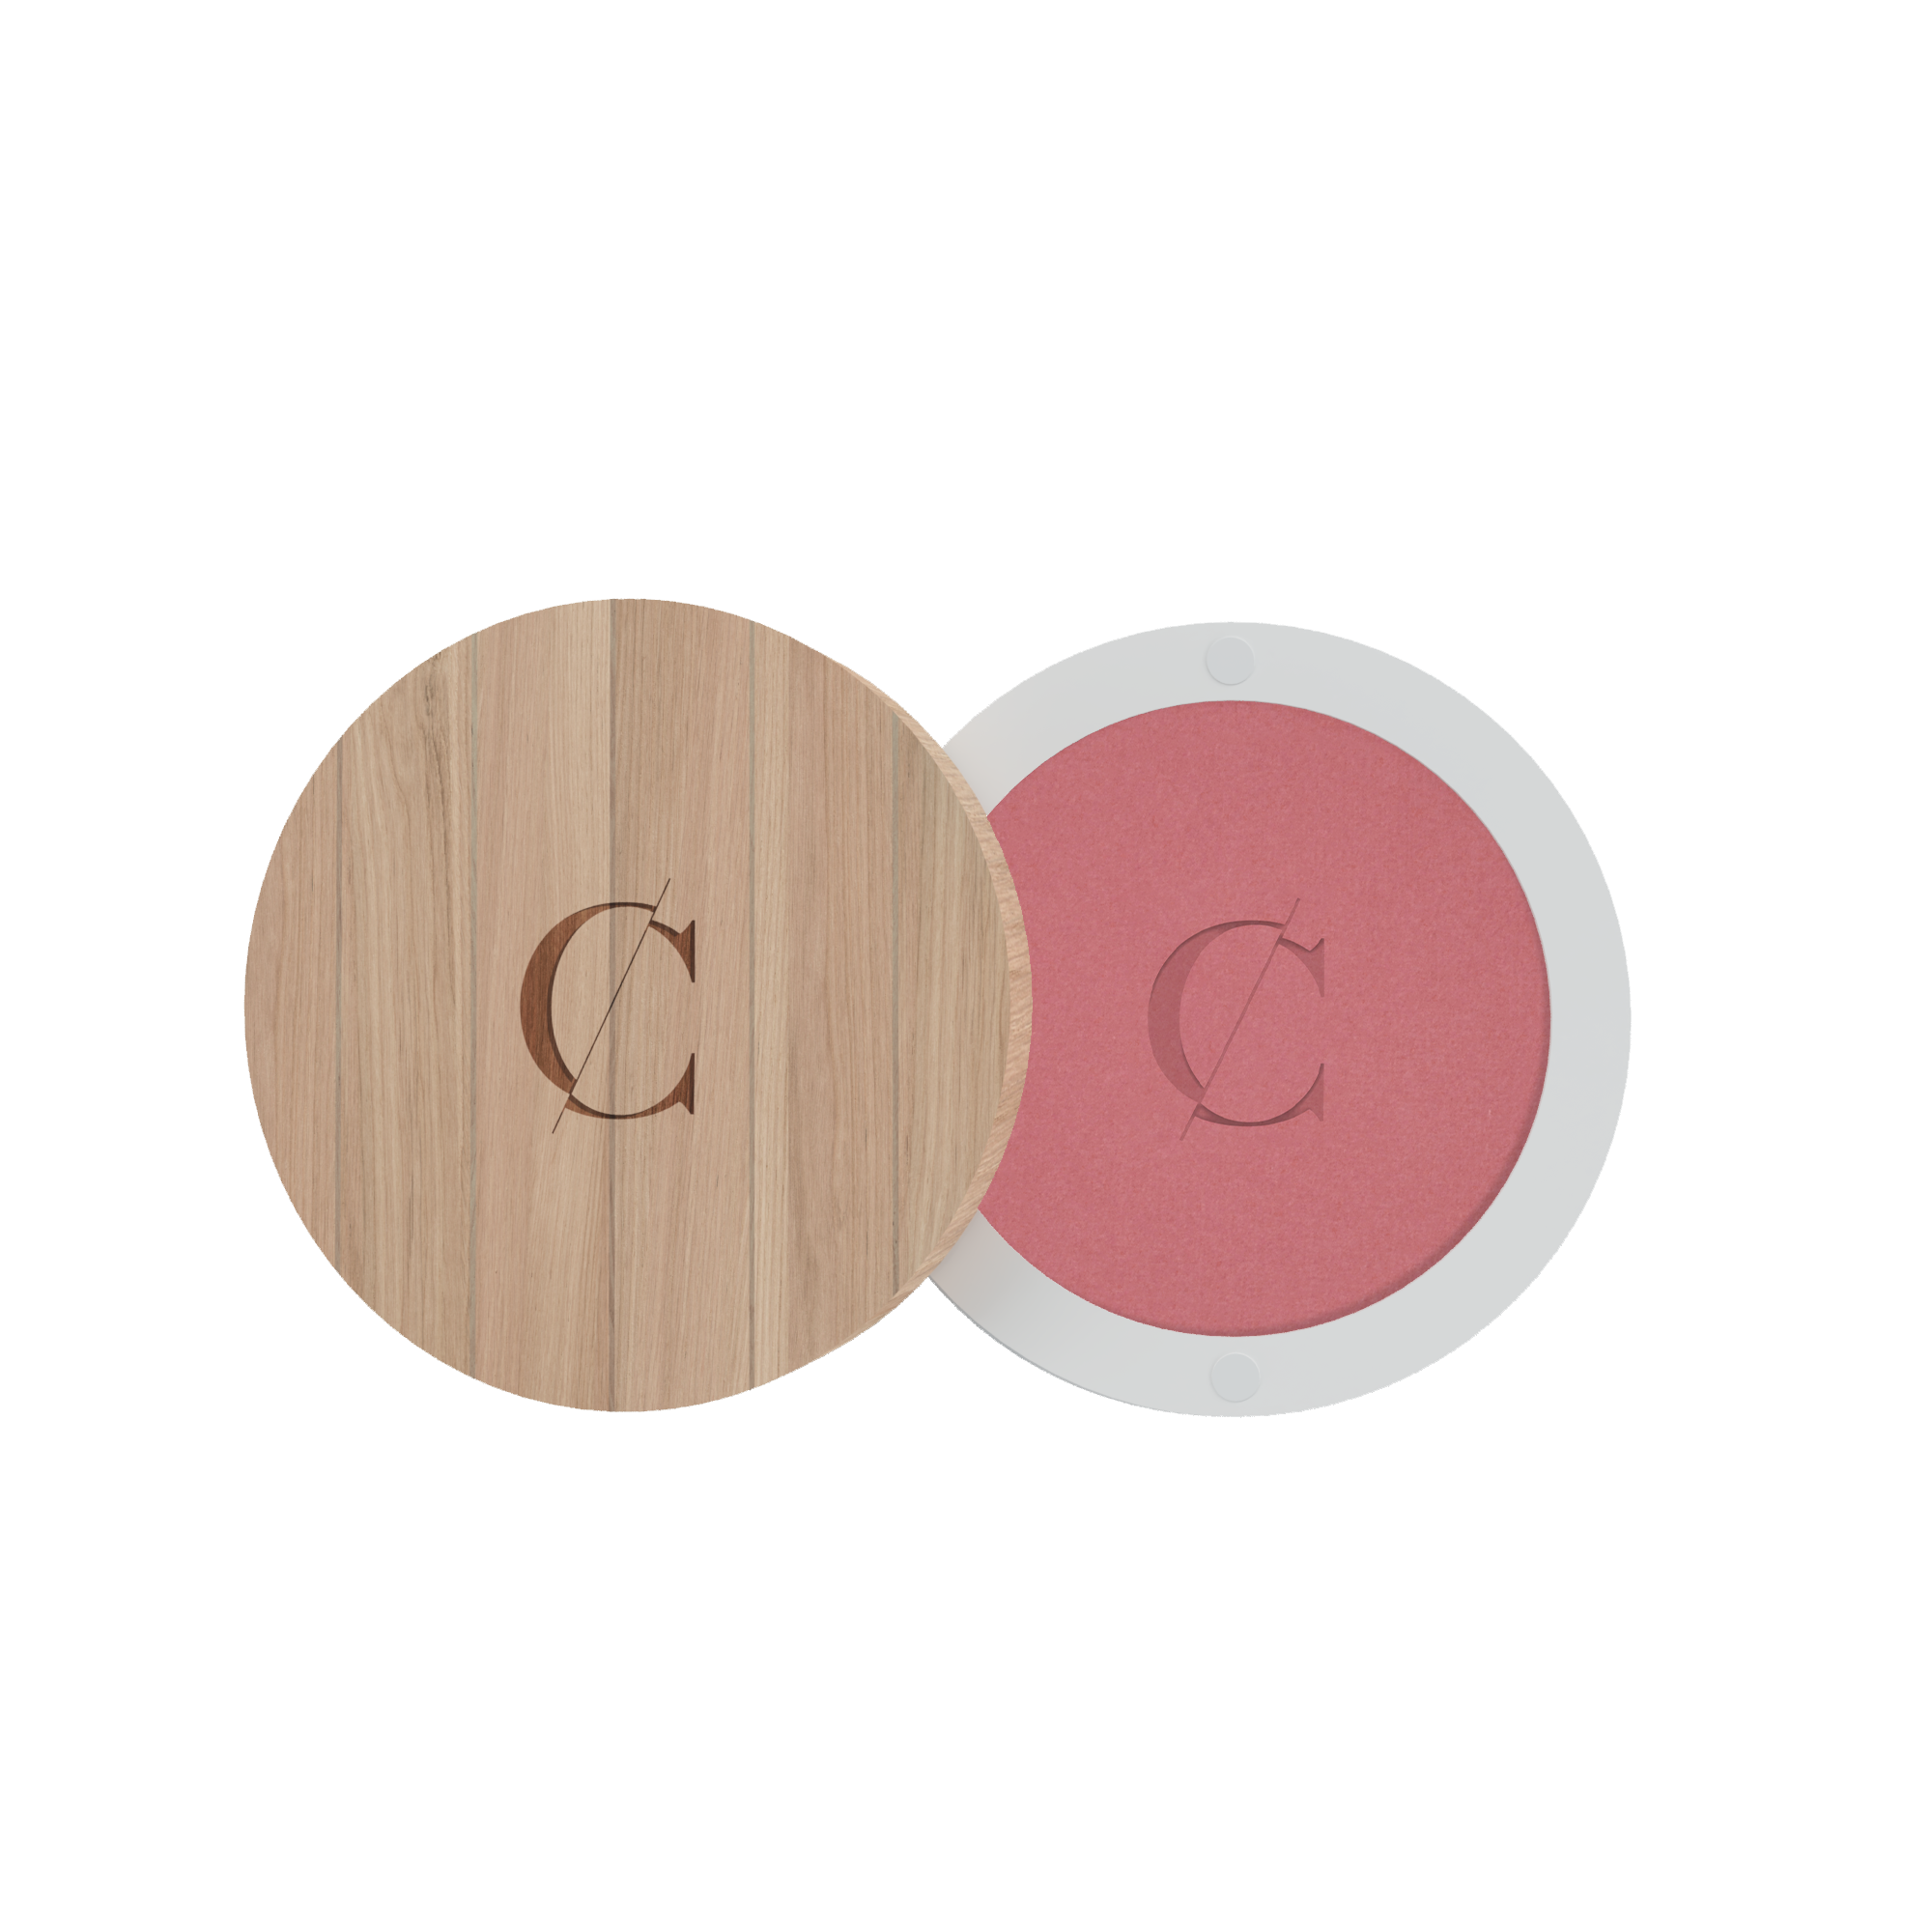 De poeders van Couleur Caramel zijn gemicroniseerd, waardoor je heel weinig van het product nodig hebt voor een goede dekking. 